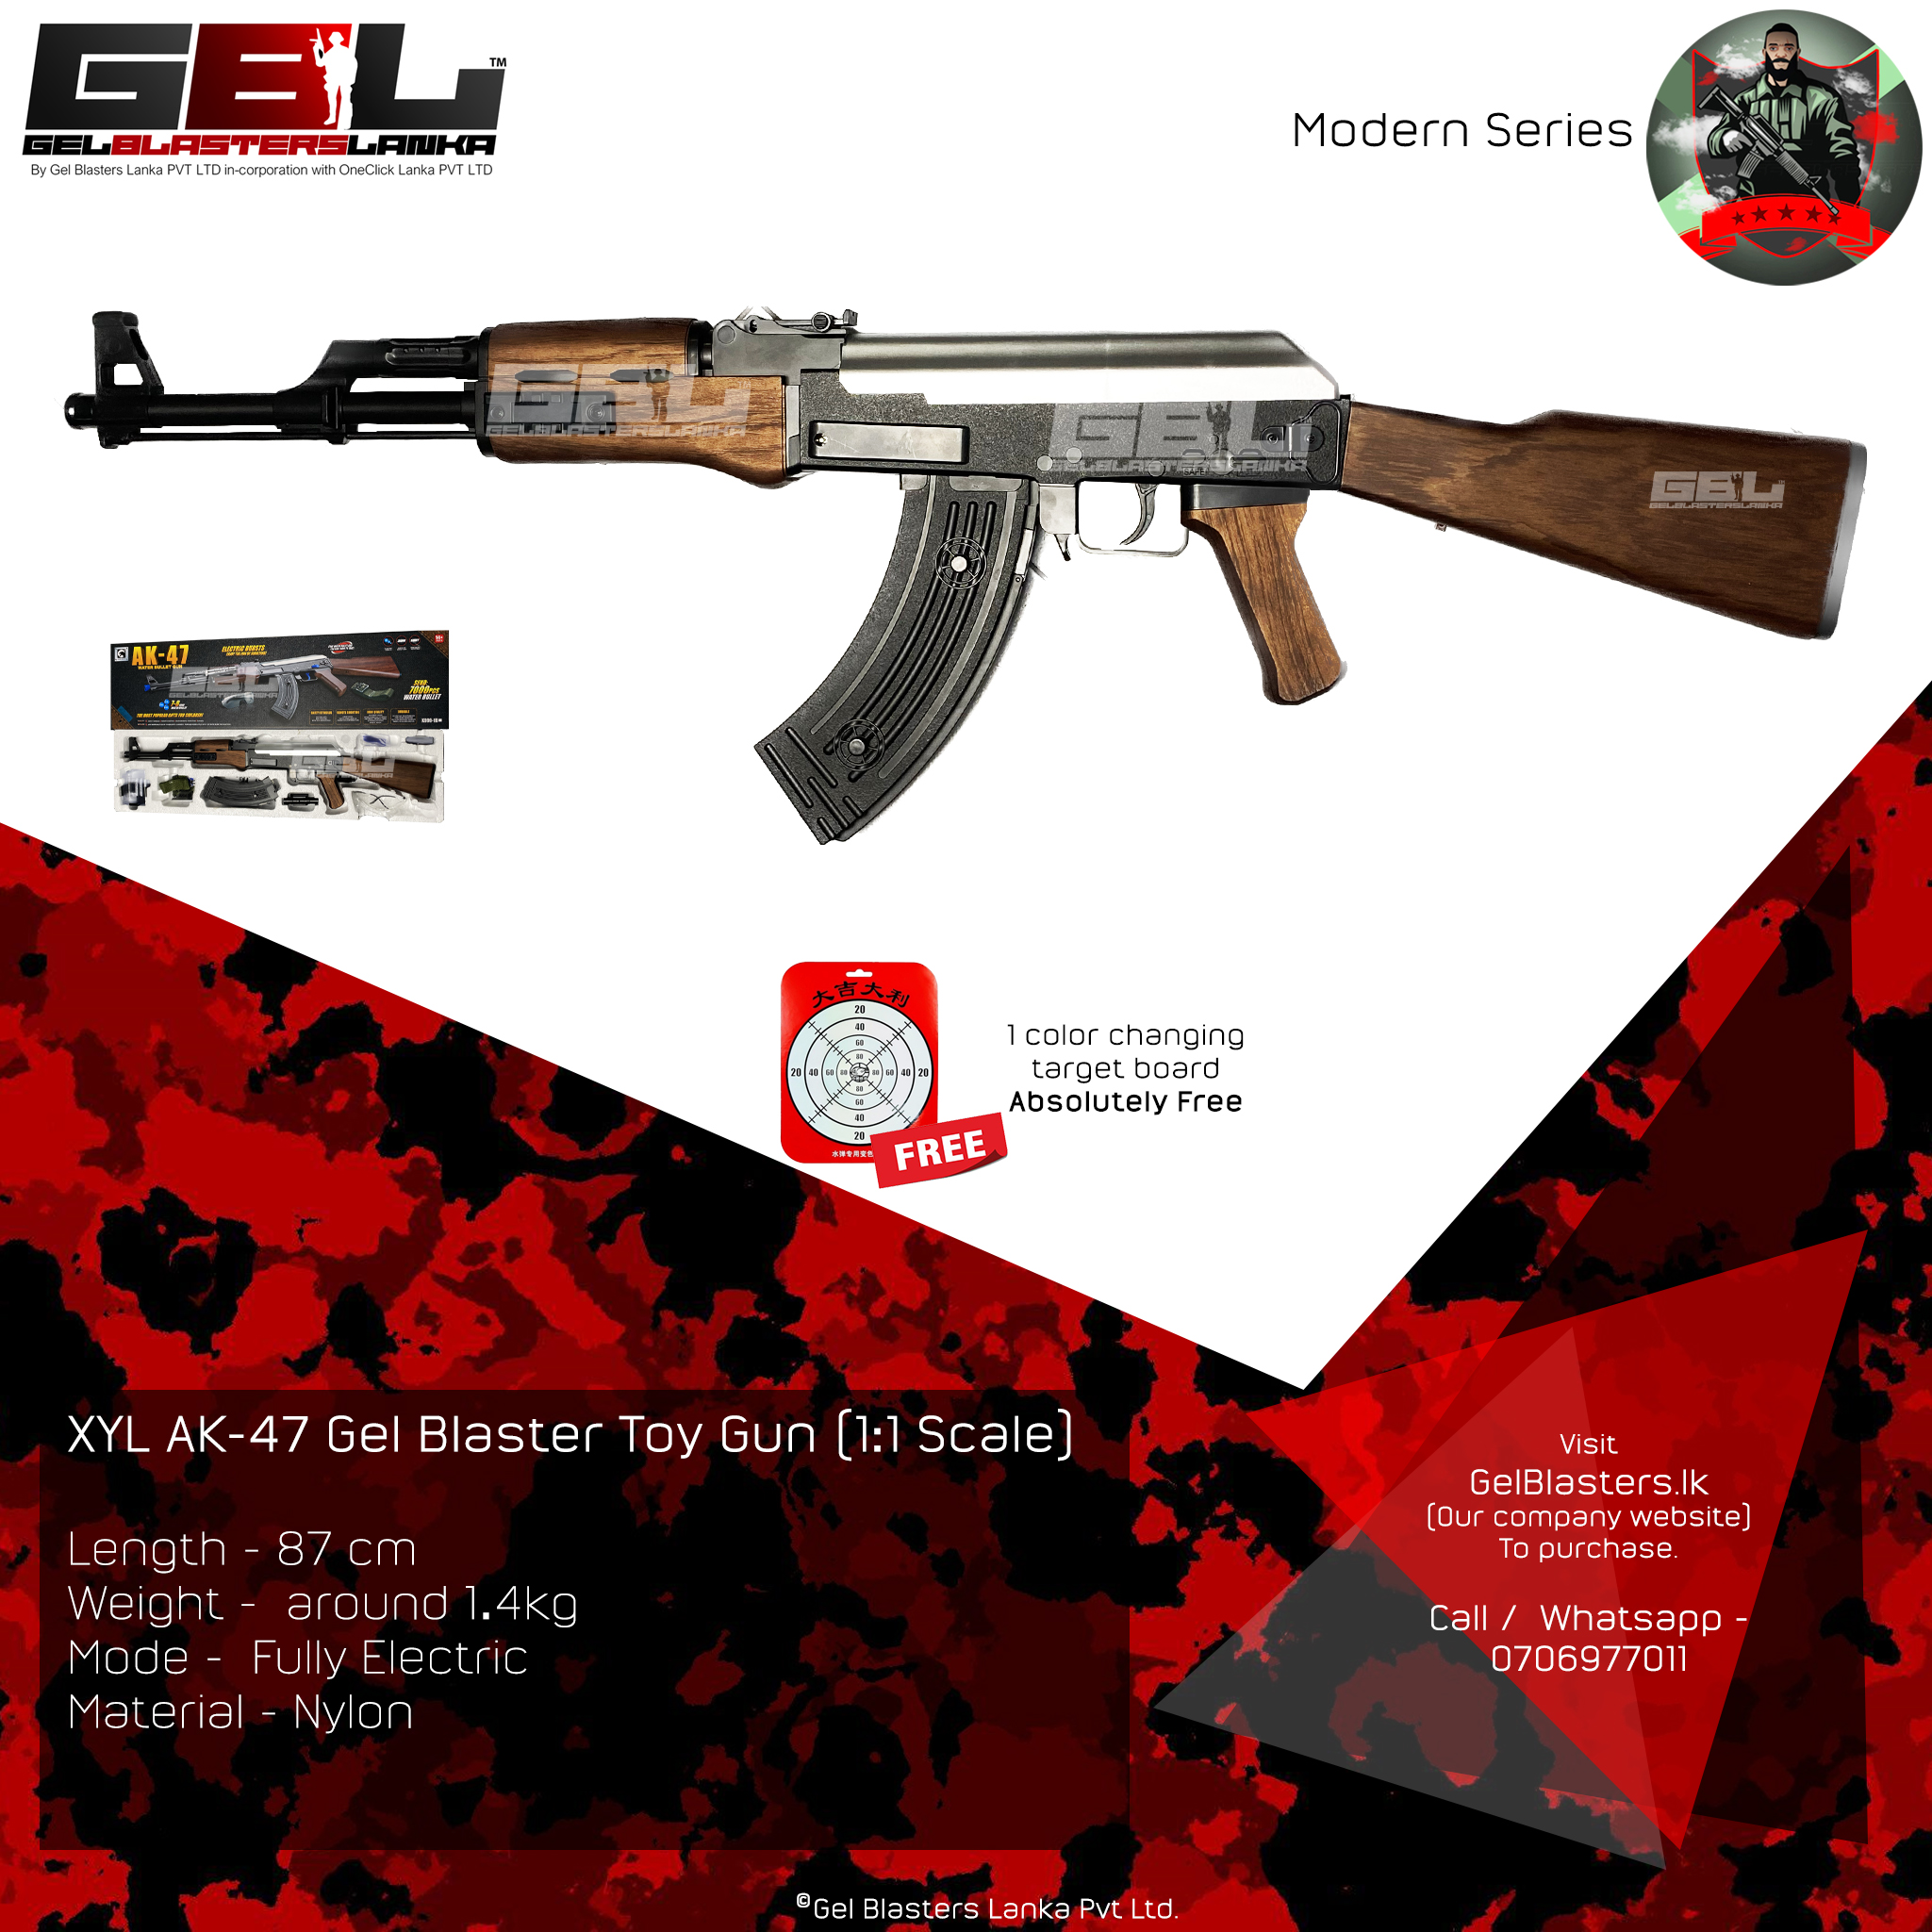 XYL AK-47 Gel Blaster – 1:1 Scale